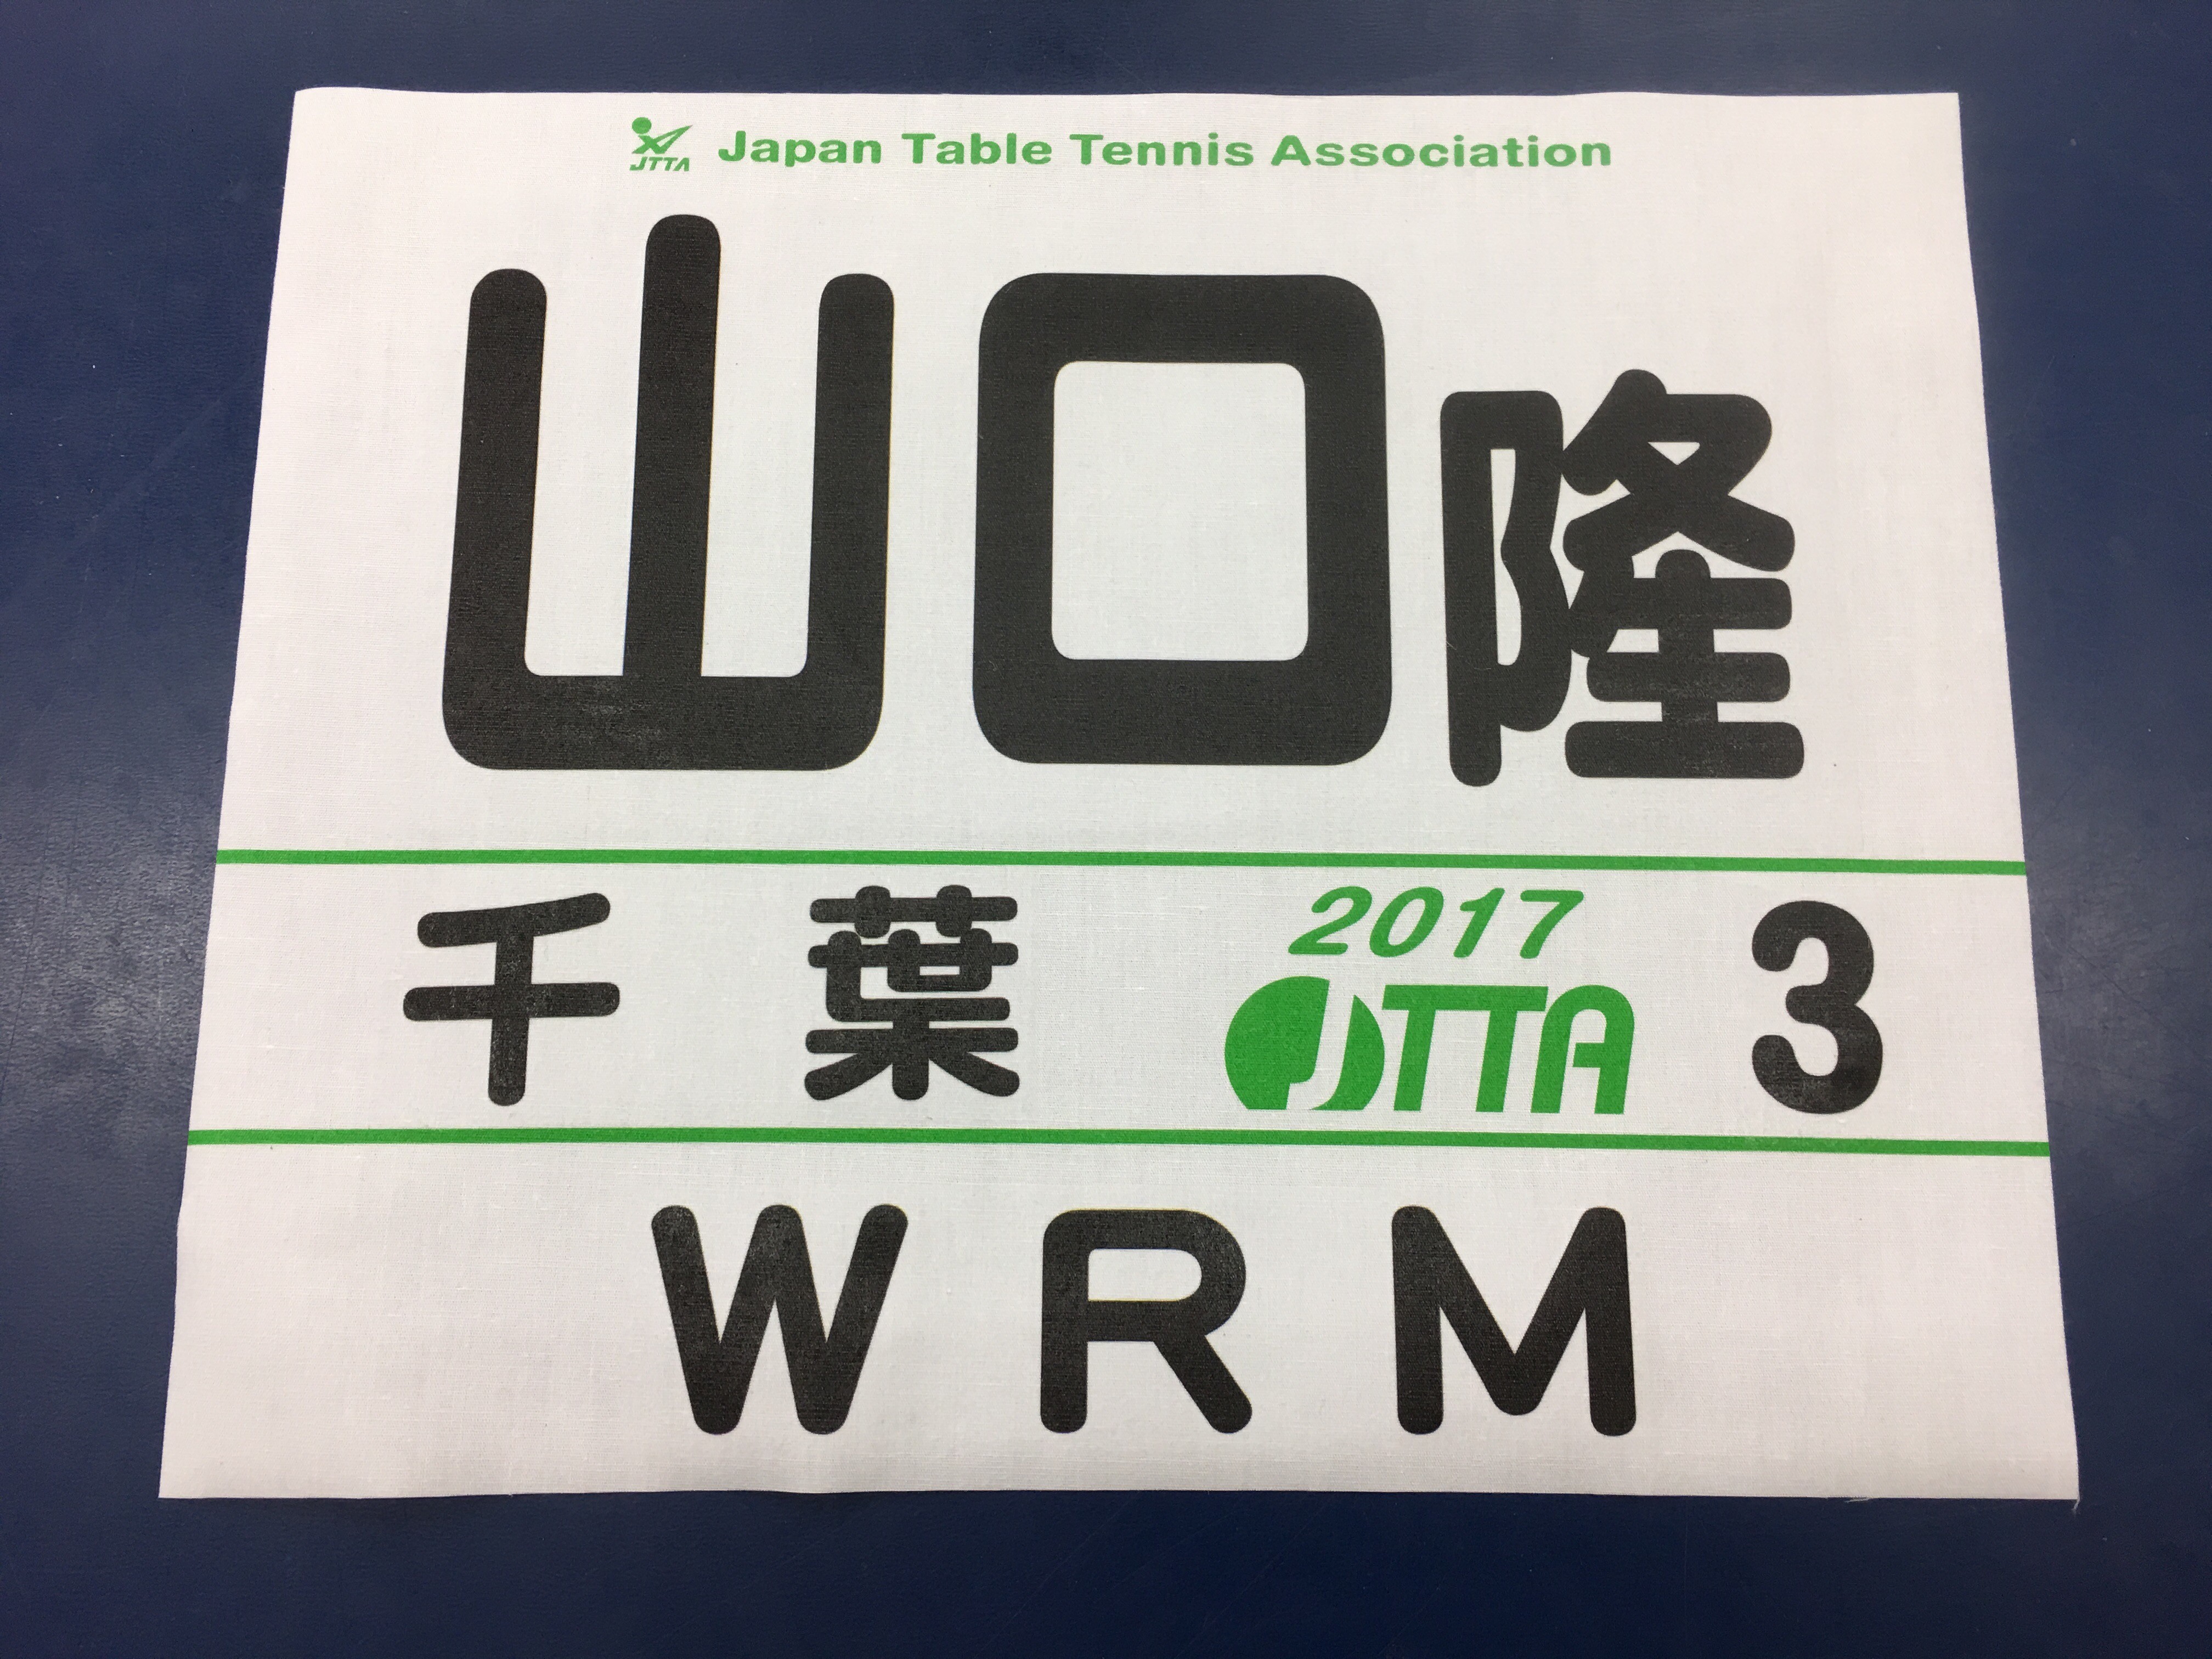 ぐっちぃ 今年の日本卓球協会のゼッケンが届きました ミドリカラーとなってます笑 字体を変えたらかわいいゼッケンになりました笑 ぐっちぃの卓球活動日記 Wrm